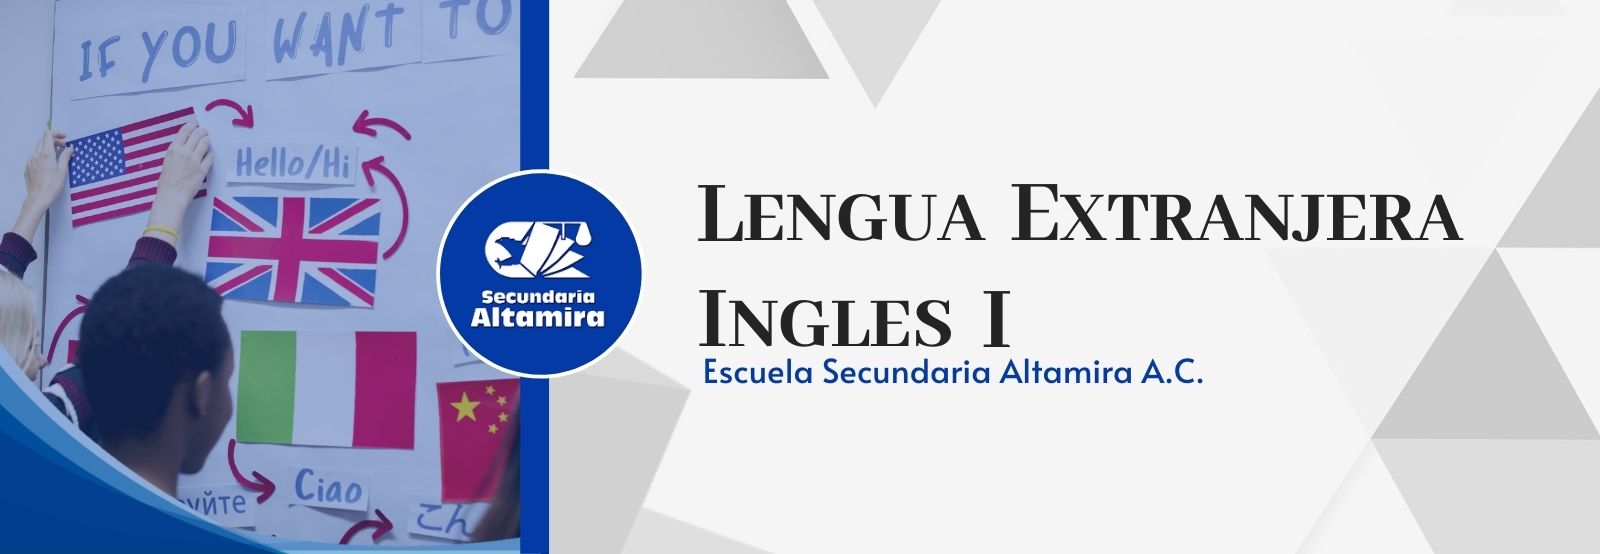 Lengua Extranjera. Inglés I